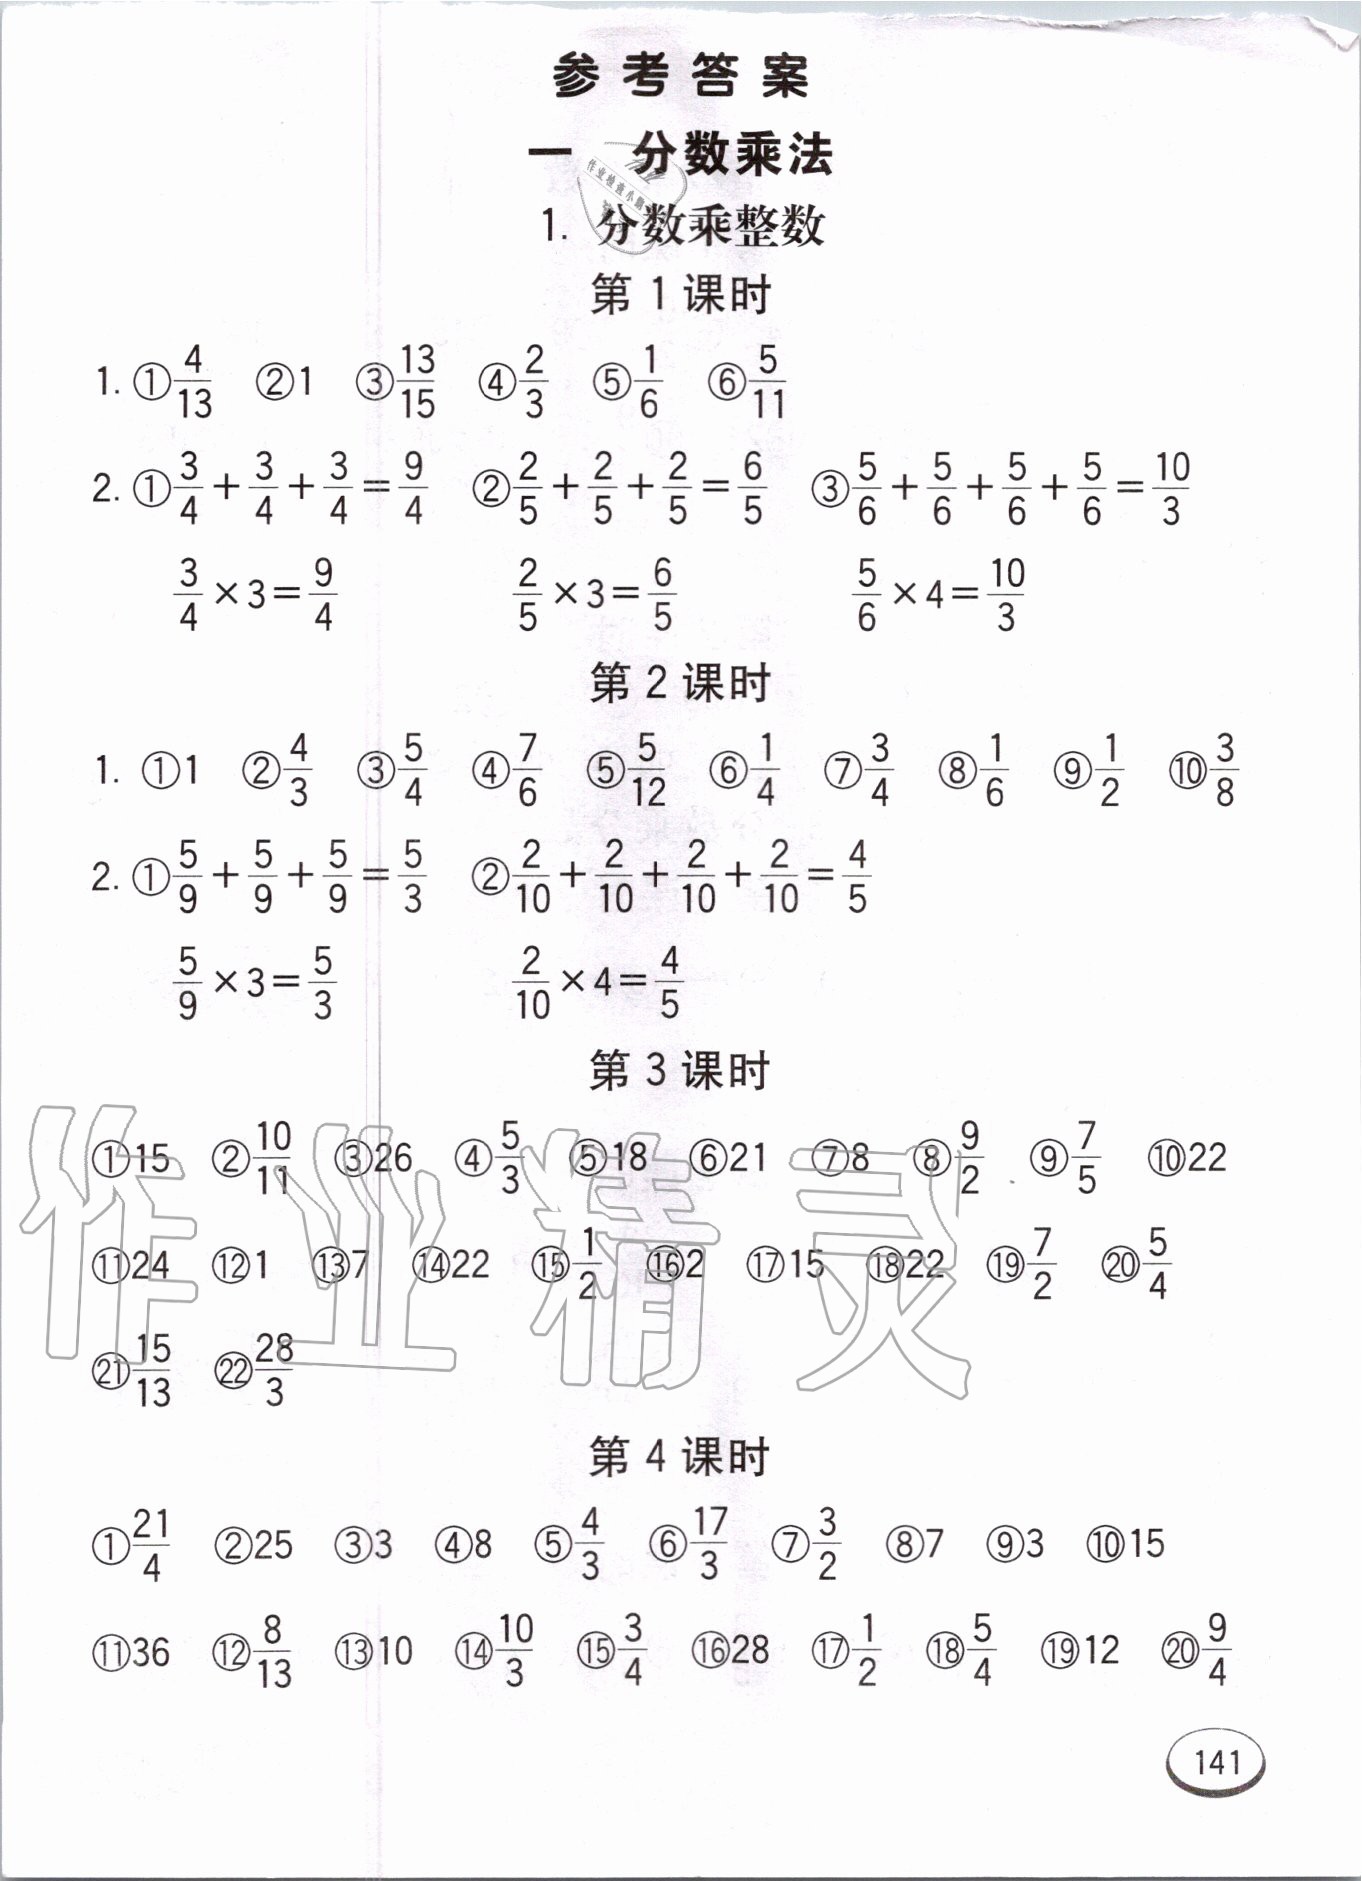 2020年七彩口算题卡六年级数学上册人教版 第1页